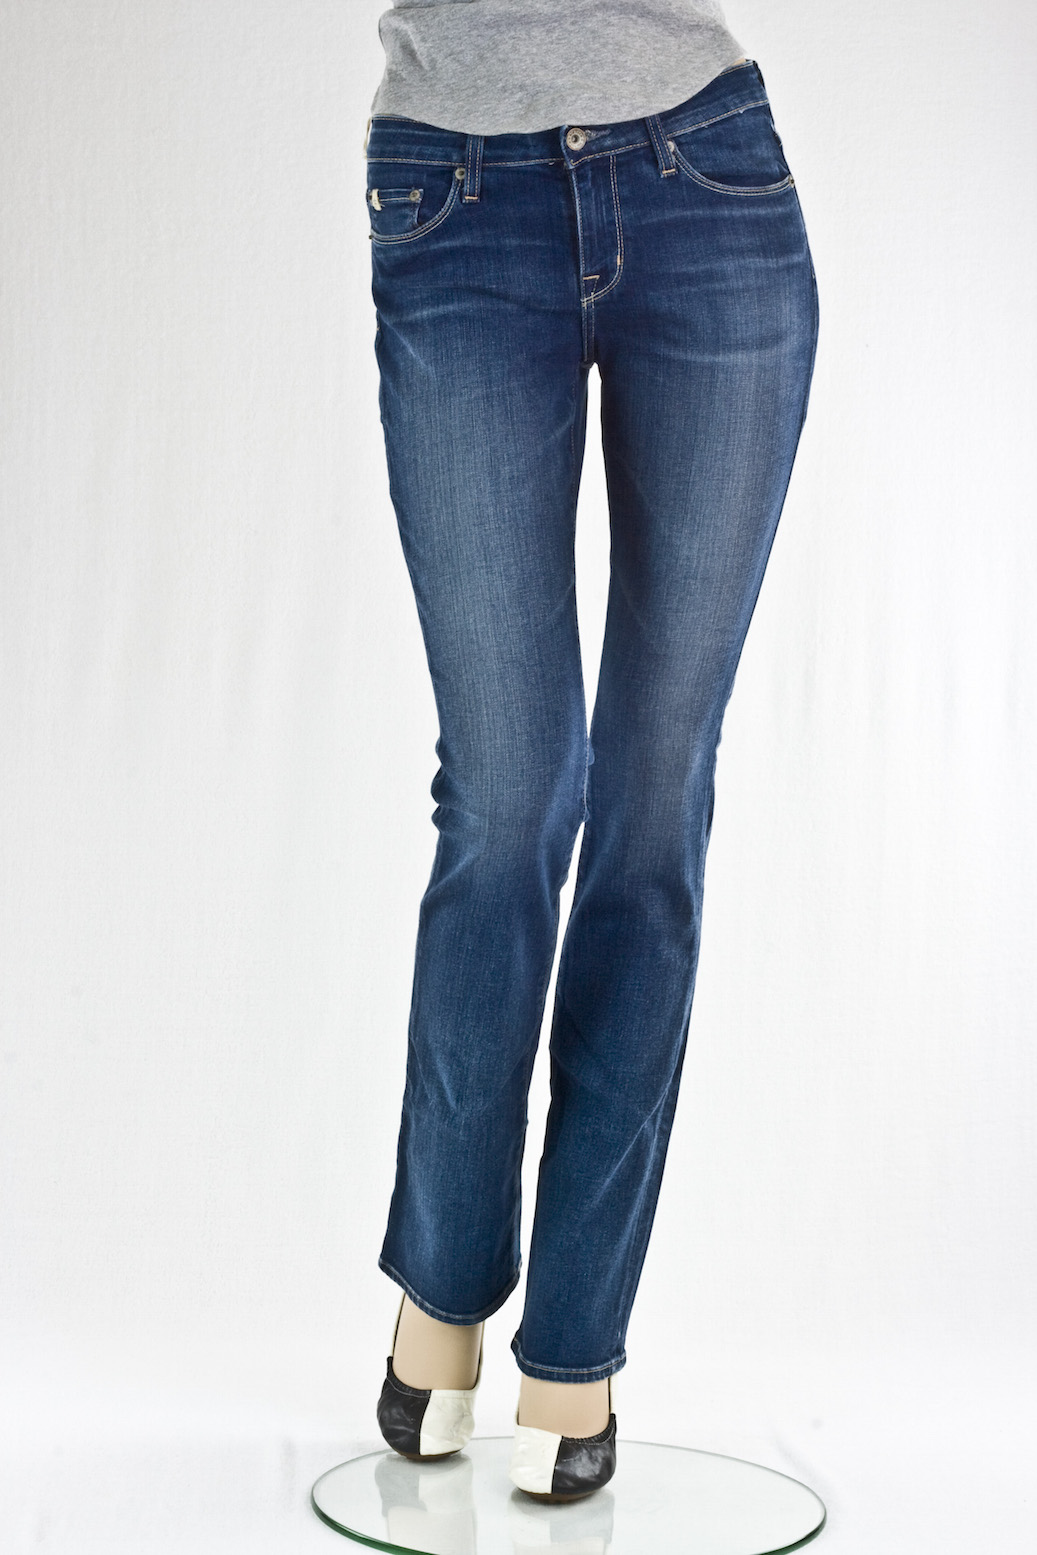 Женские джинсы Big Star прямые sarah Mid rise slim boot интернет-магазин Fashion Jeans